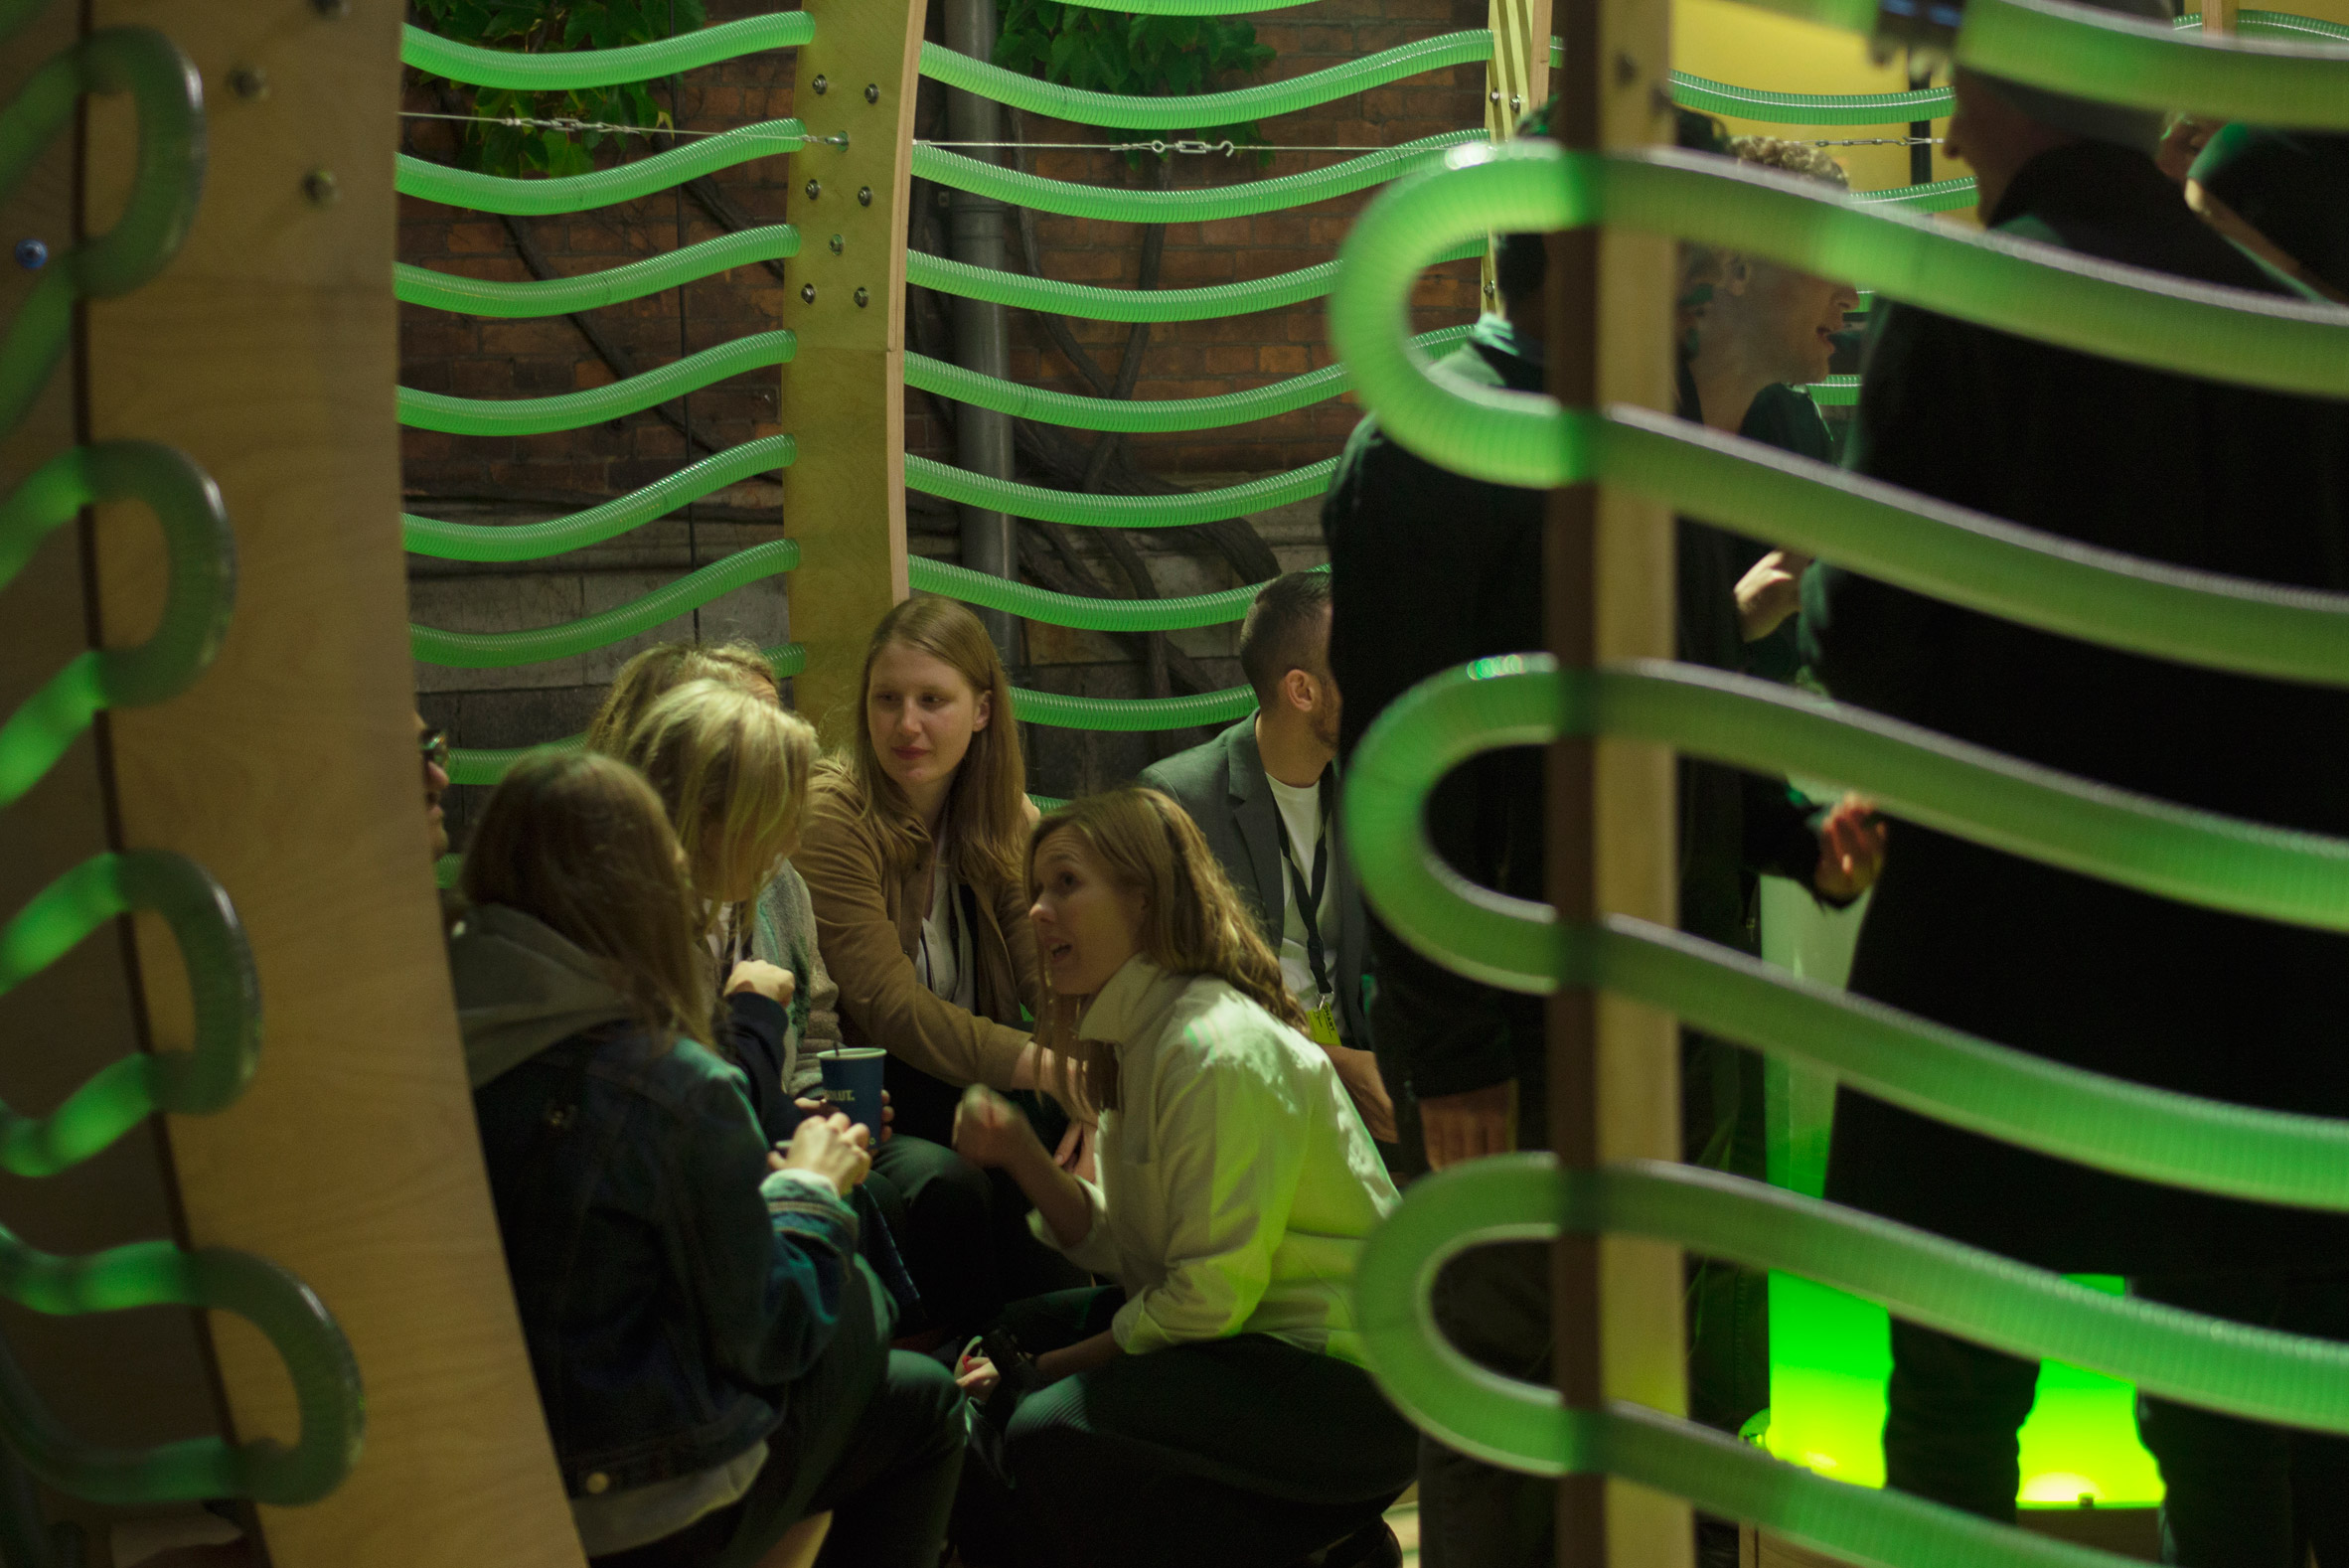 Space10 creates an algae-producing pavilion in Copenhagen